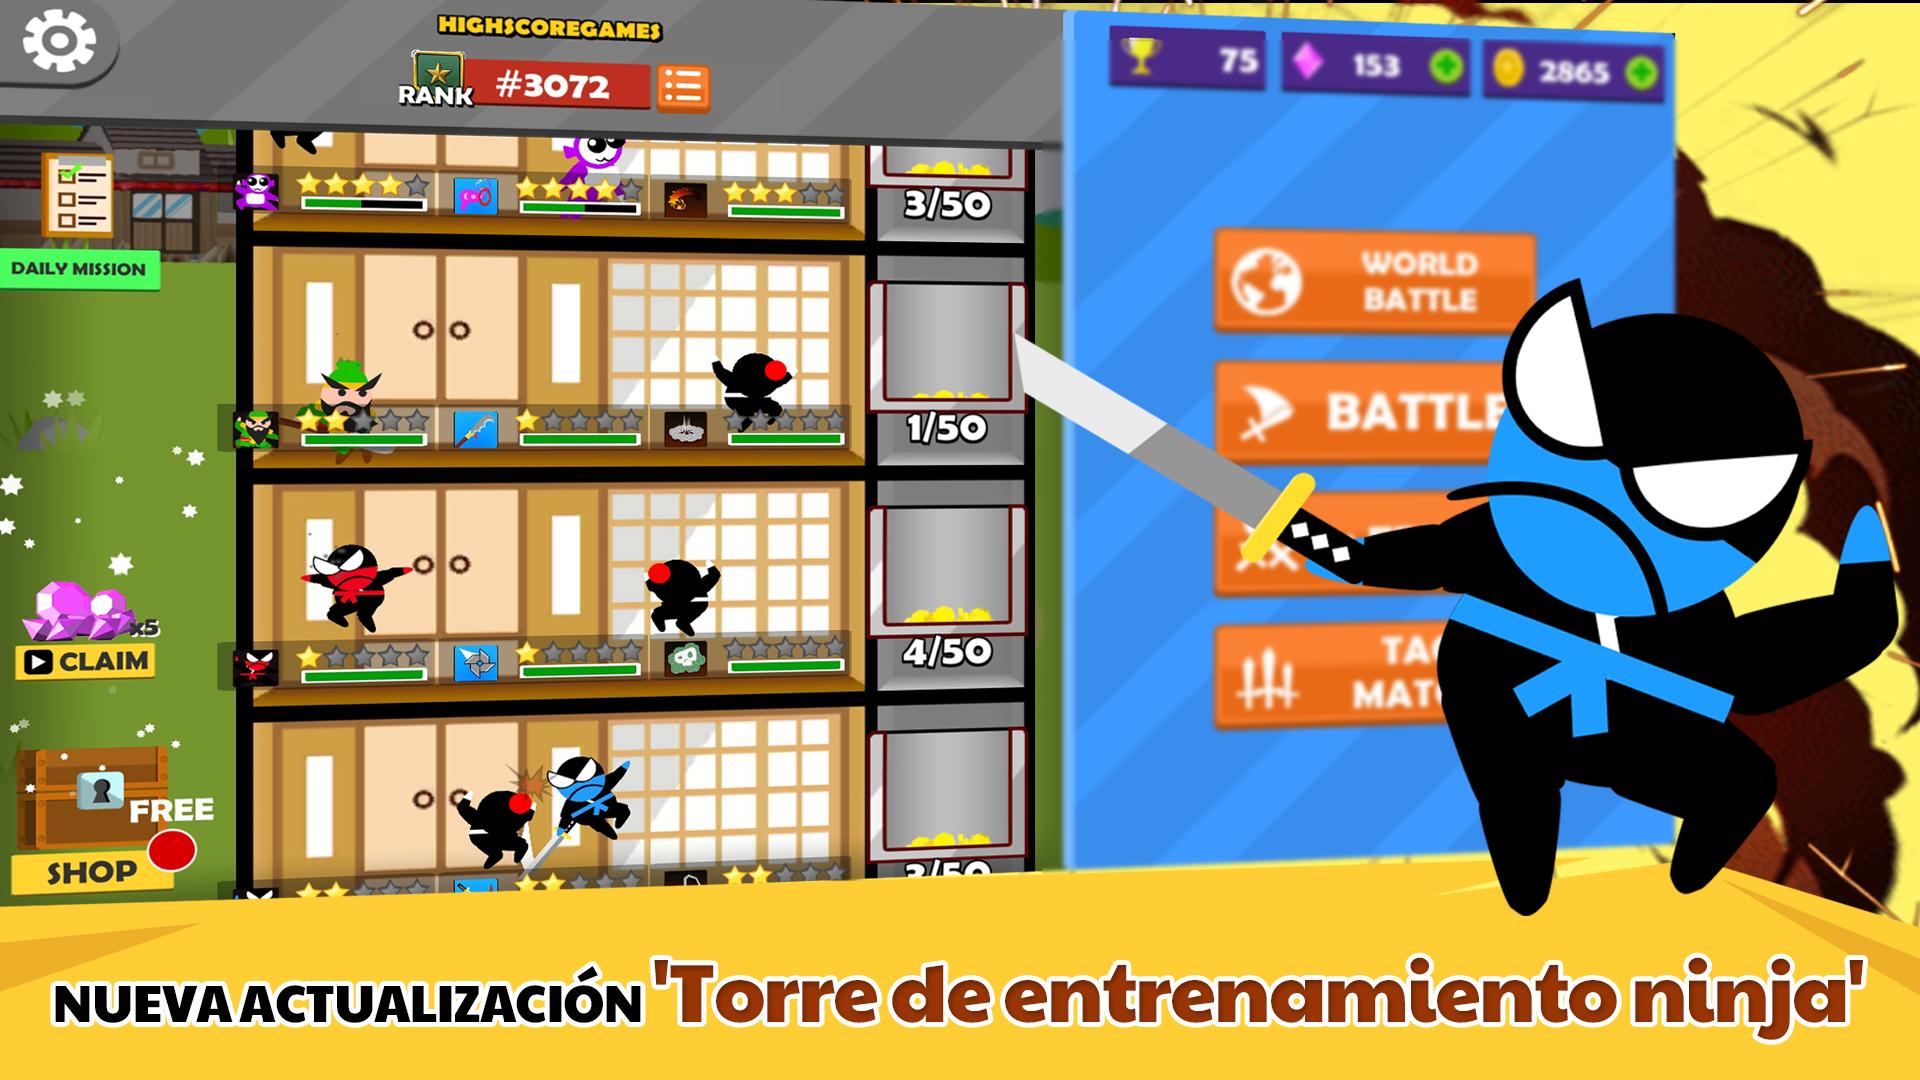 Salta Ninja Batalla 2 Jugador Con Amigos For Android Apk - roblox jump hack 2019 roblox free ninja animation